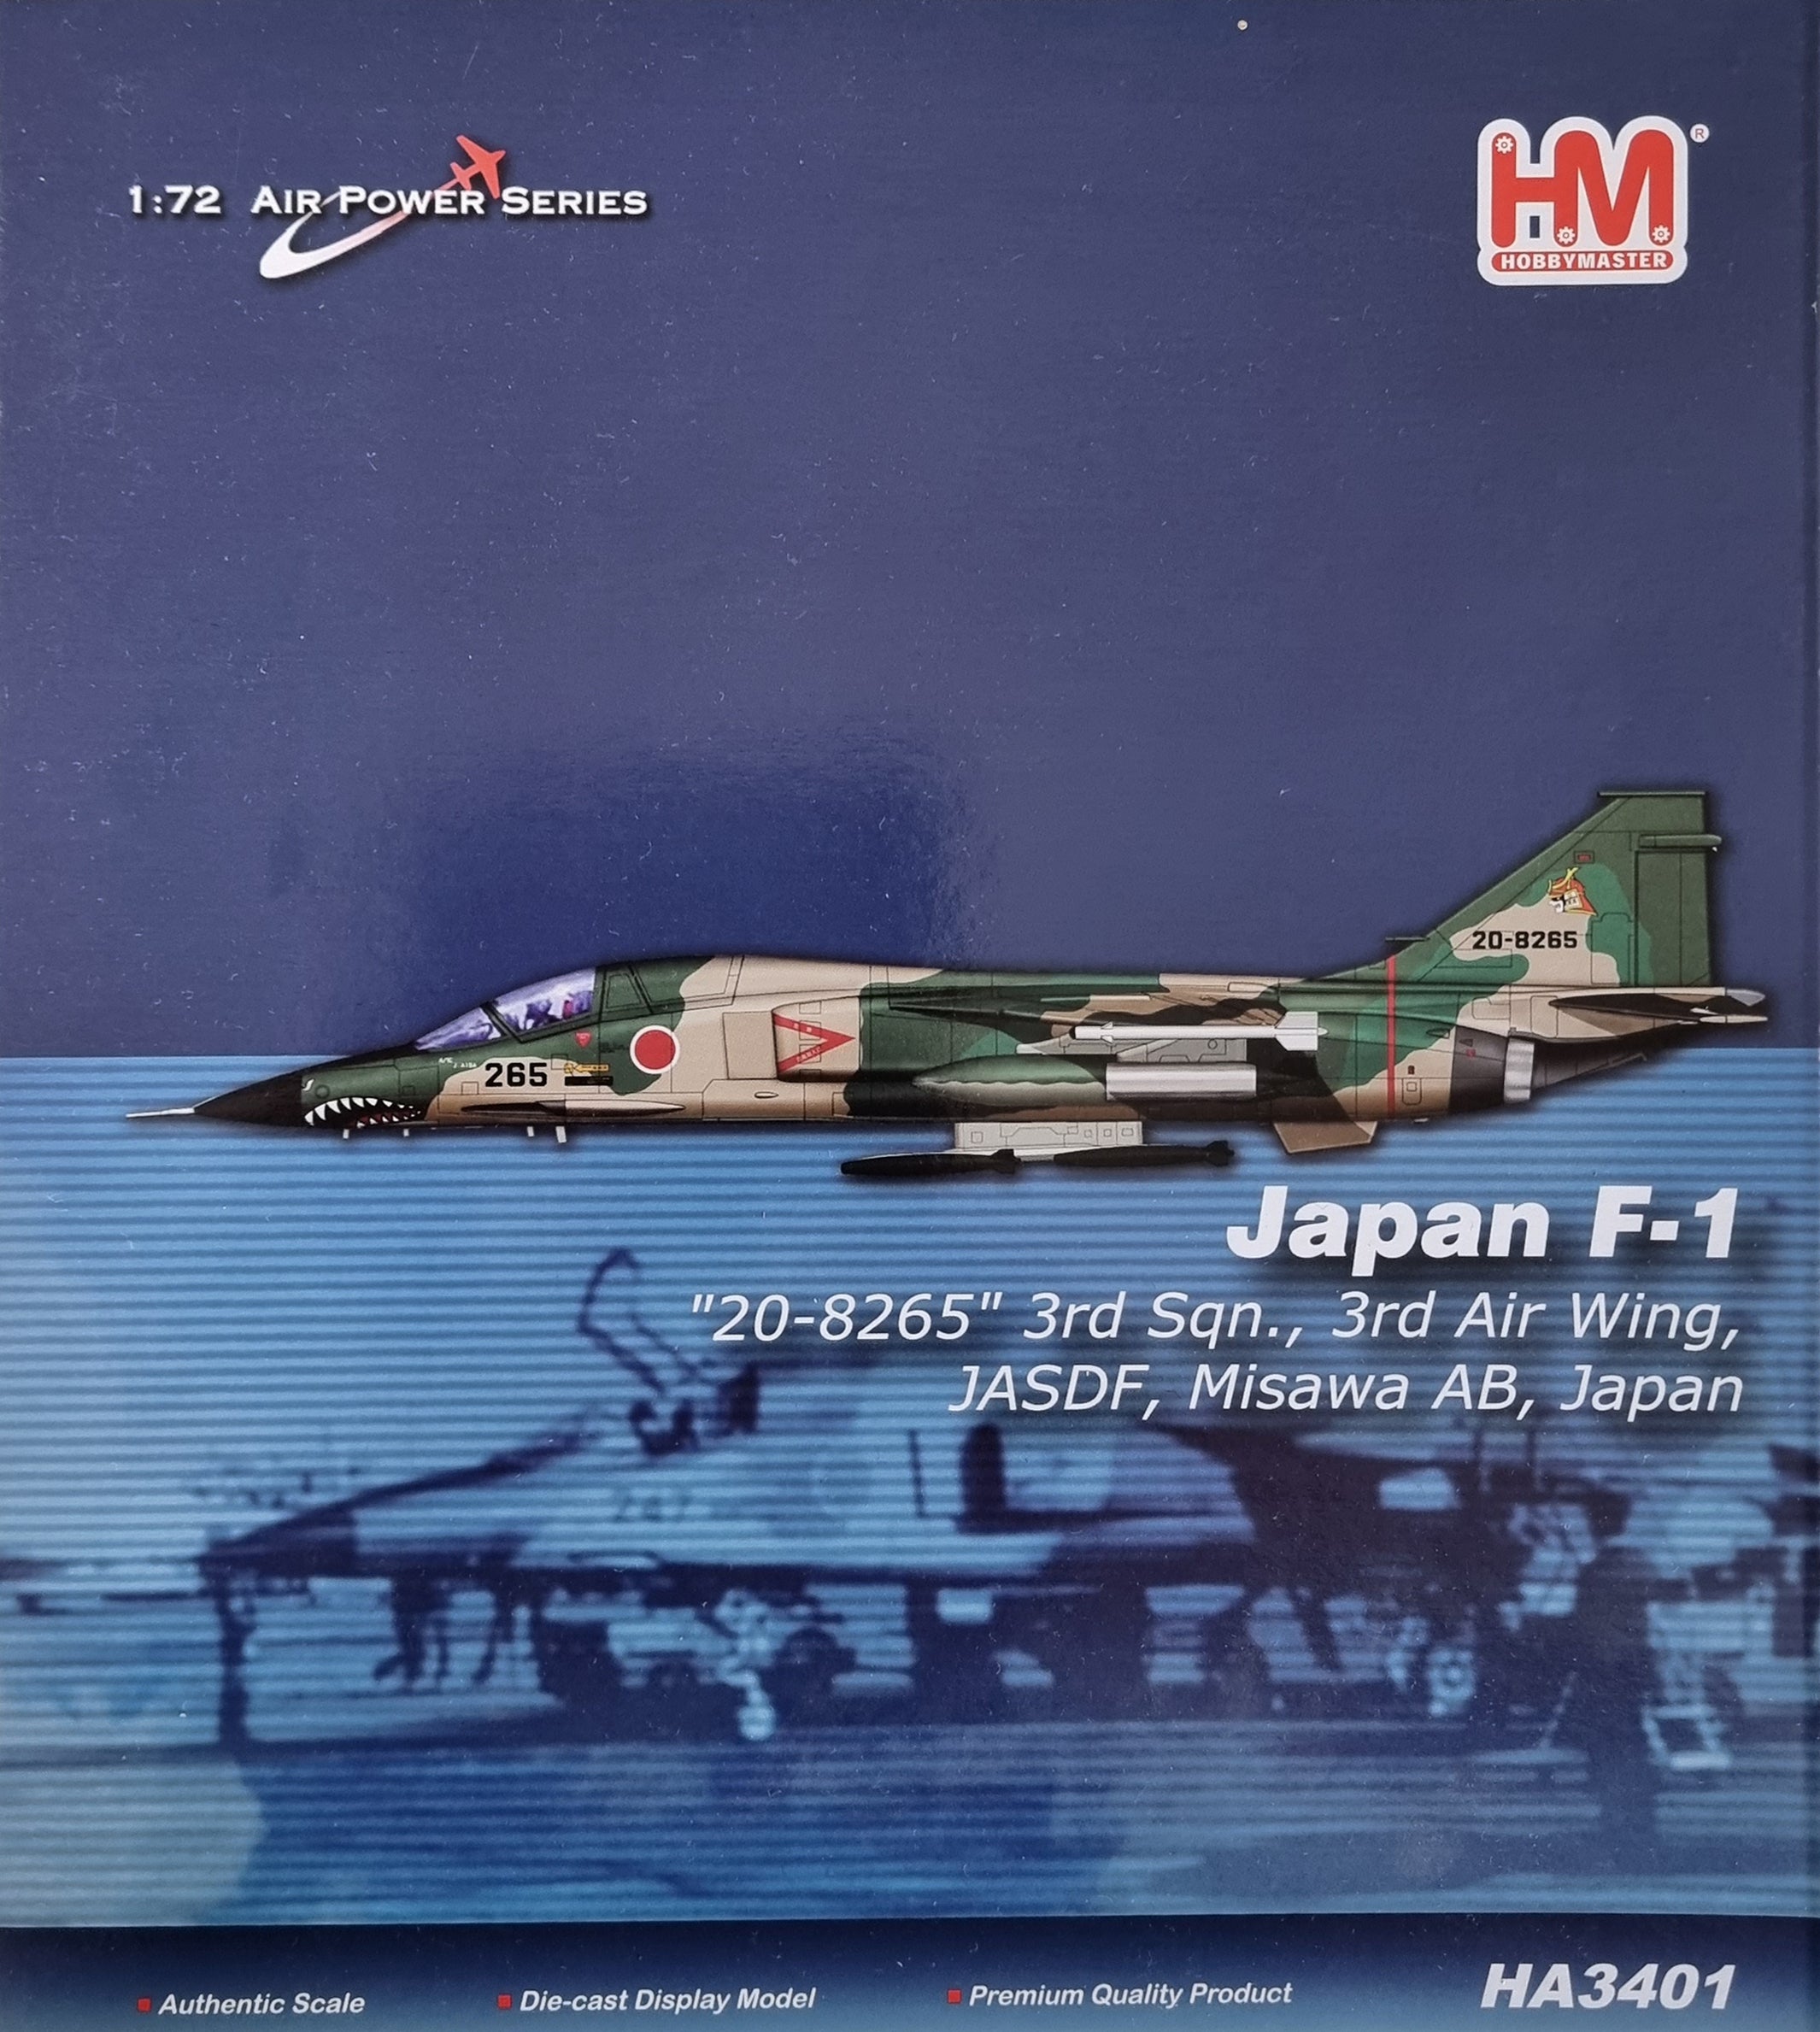 1/72 HM HOBBY MASTER JAPAN F-1 HA3401 - プラモデル